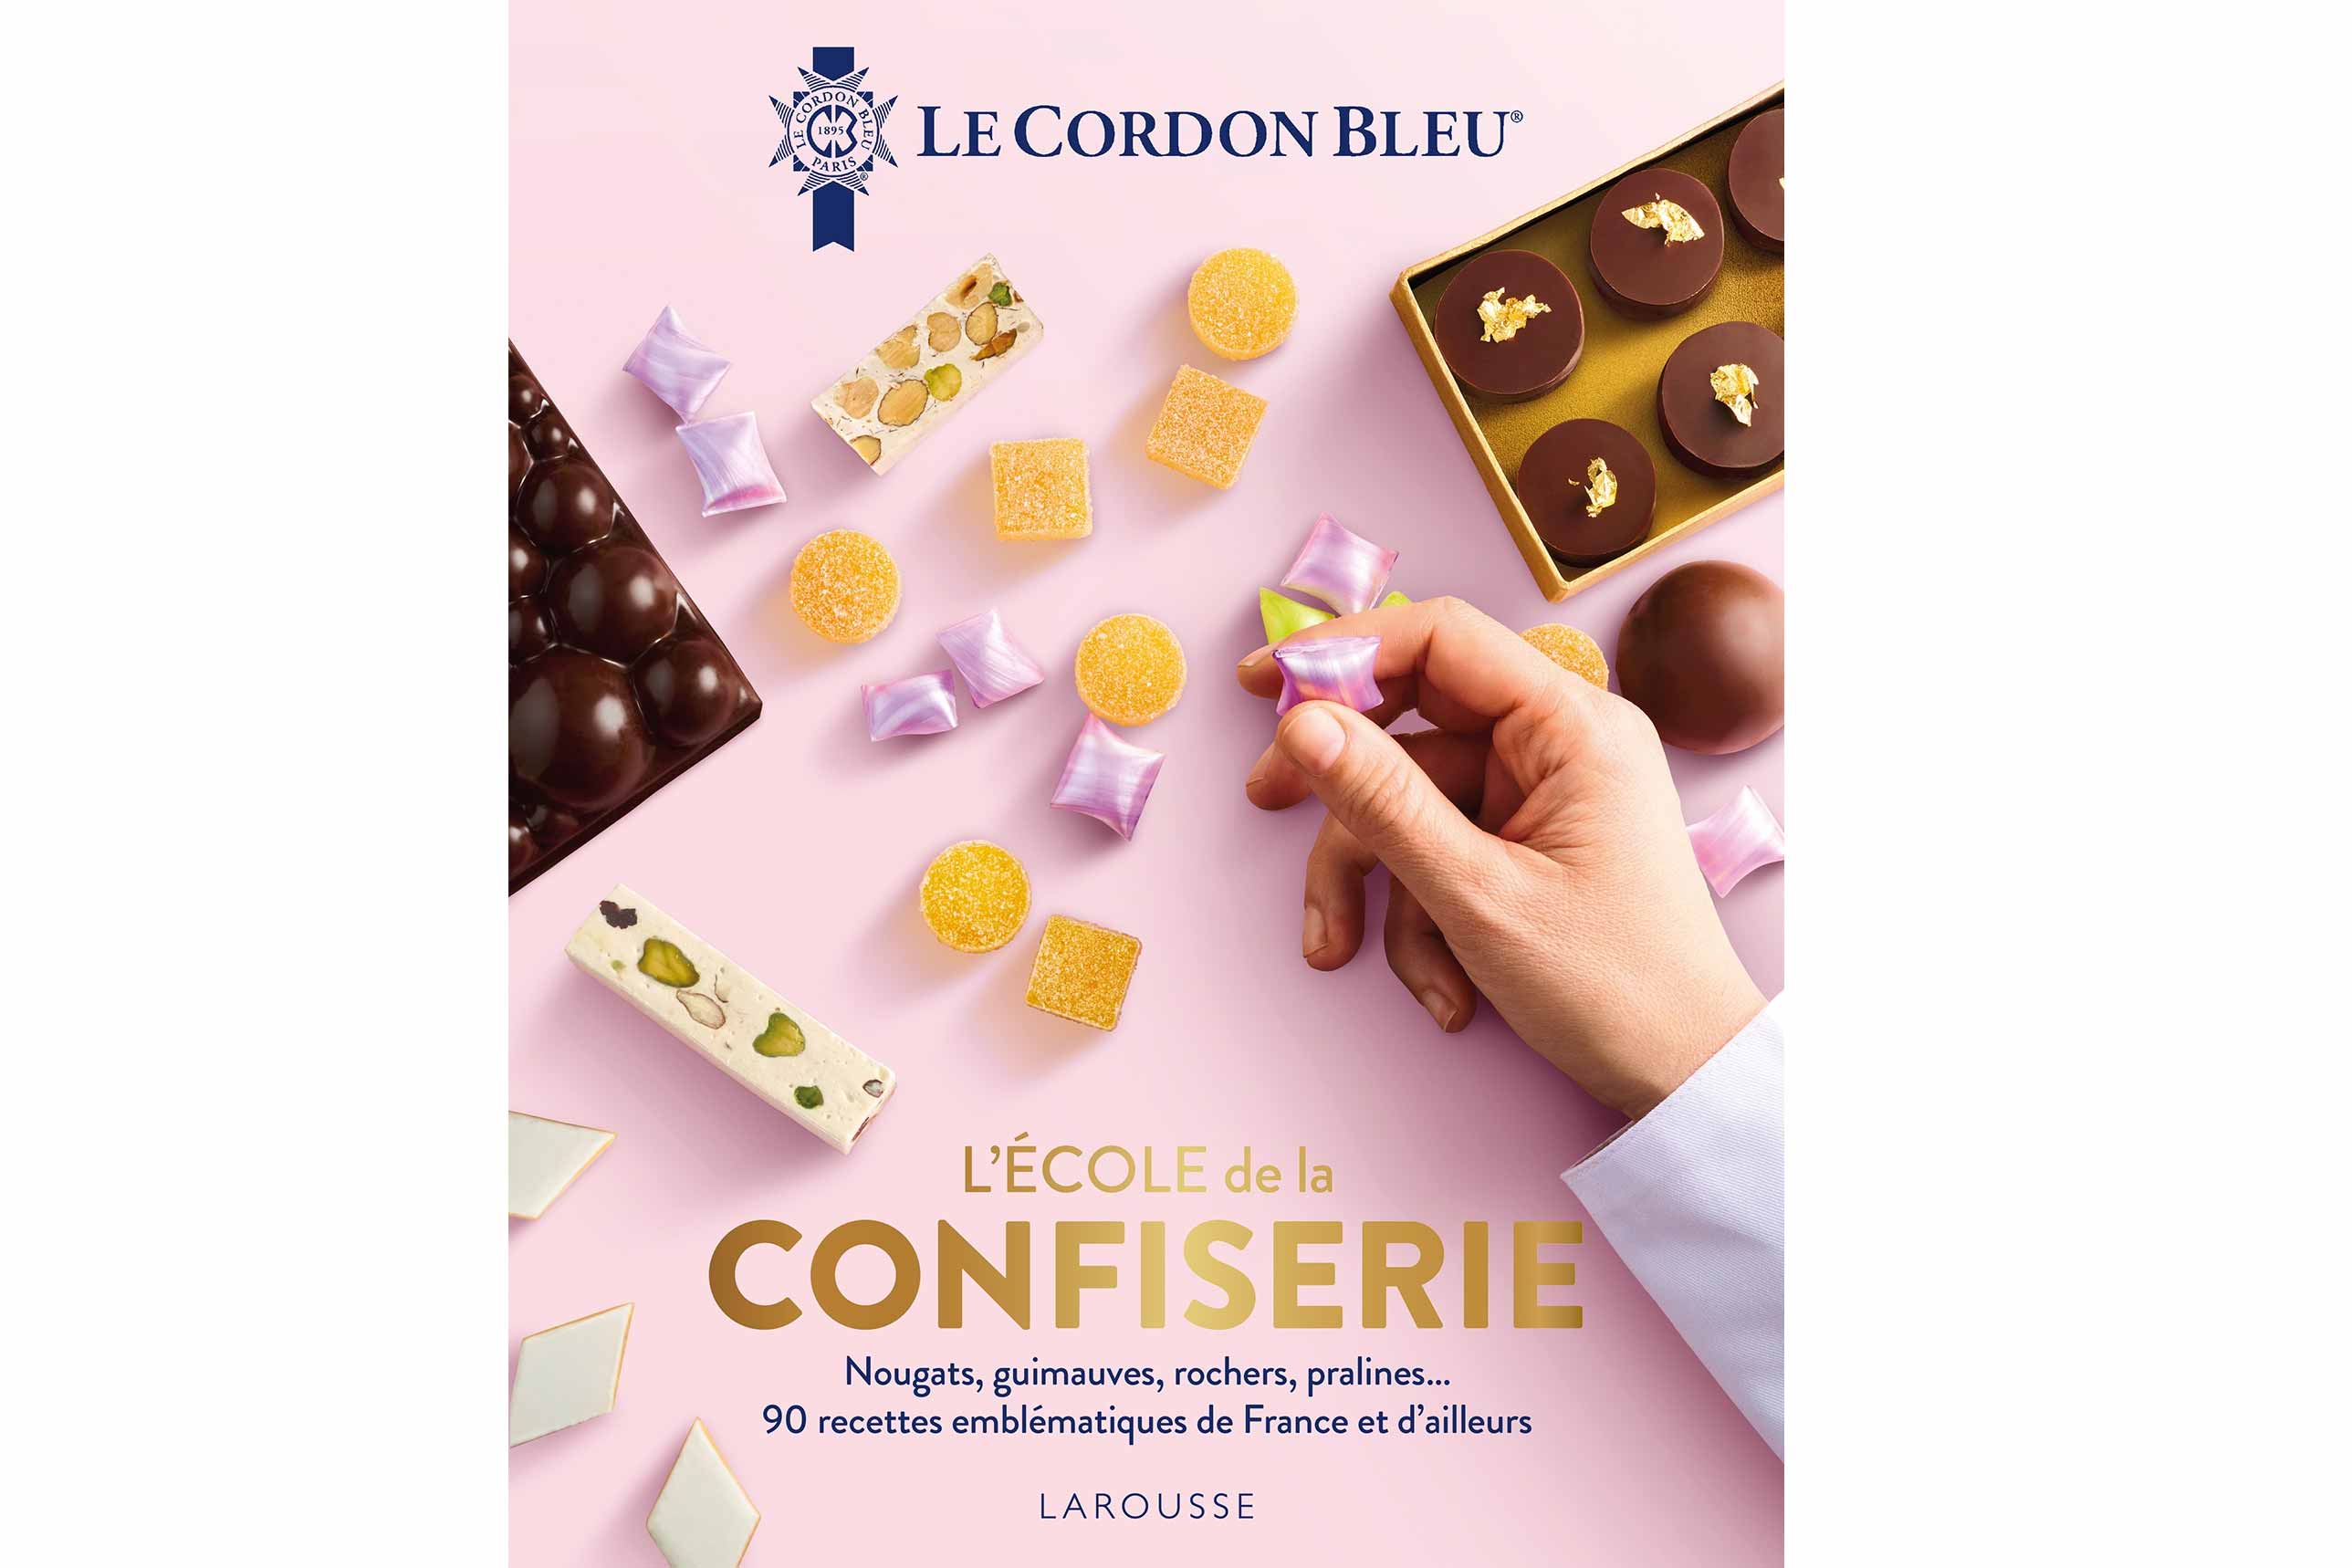 Le Cordon Bleu unveils its latest book: 